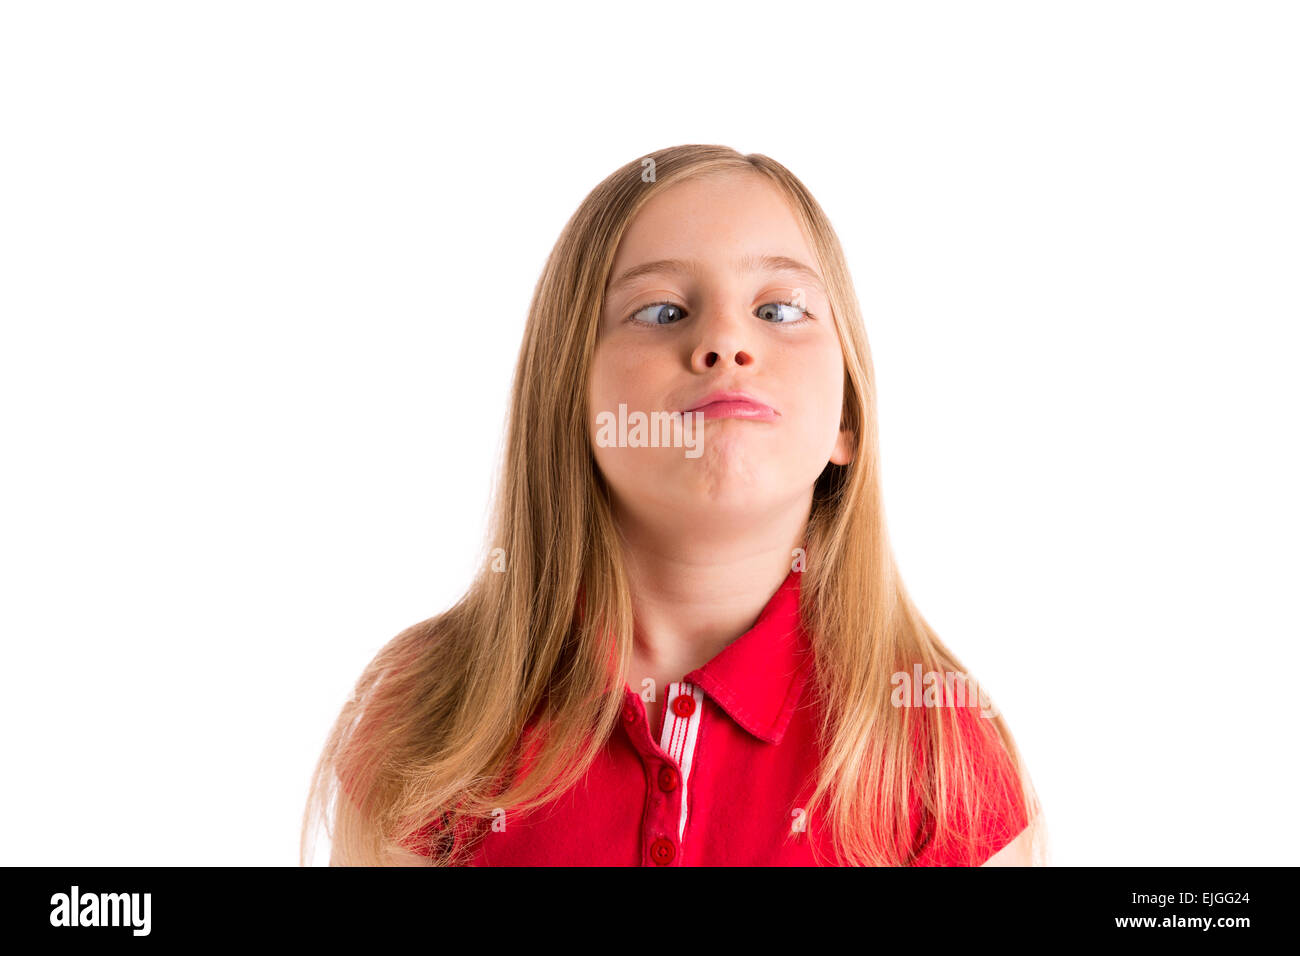 Blonde yeux croisés kid girl expression drole geste dans fond blanc Banque D'Images